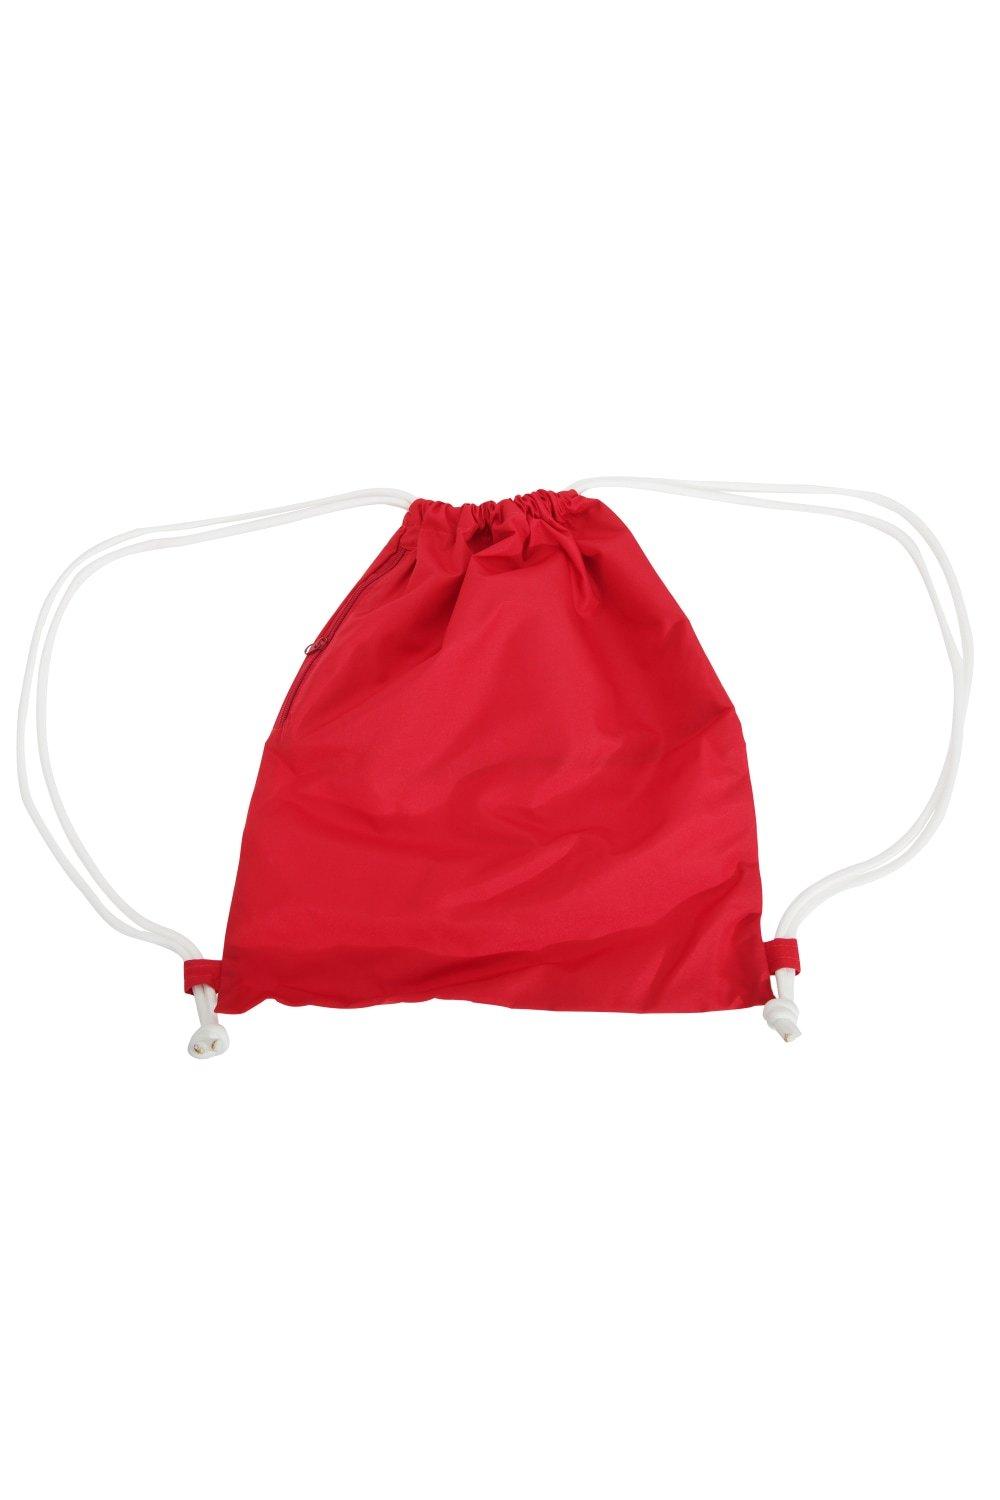 Сумка Icon на шнурке / Gymsac Bagbase, красный сумка urban gymsac на шнурке sol s зеленый